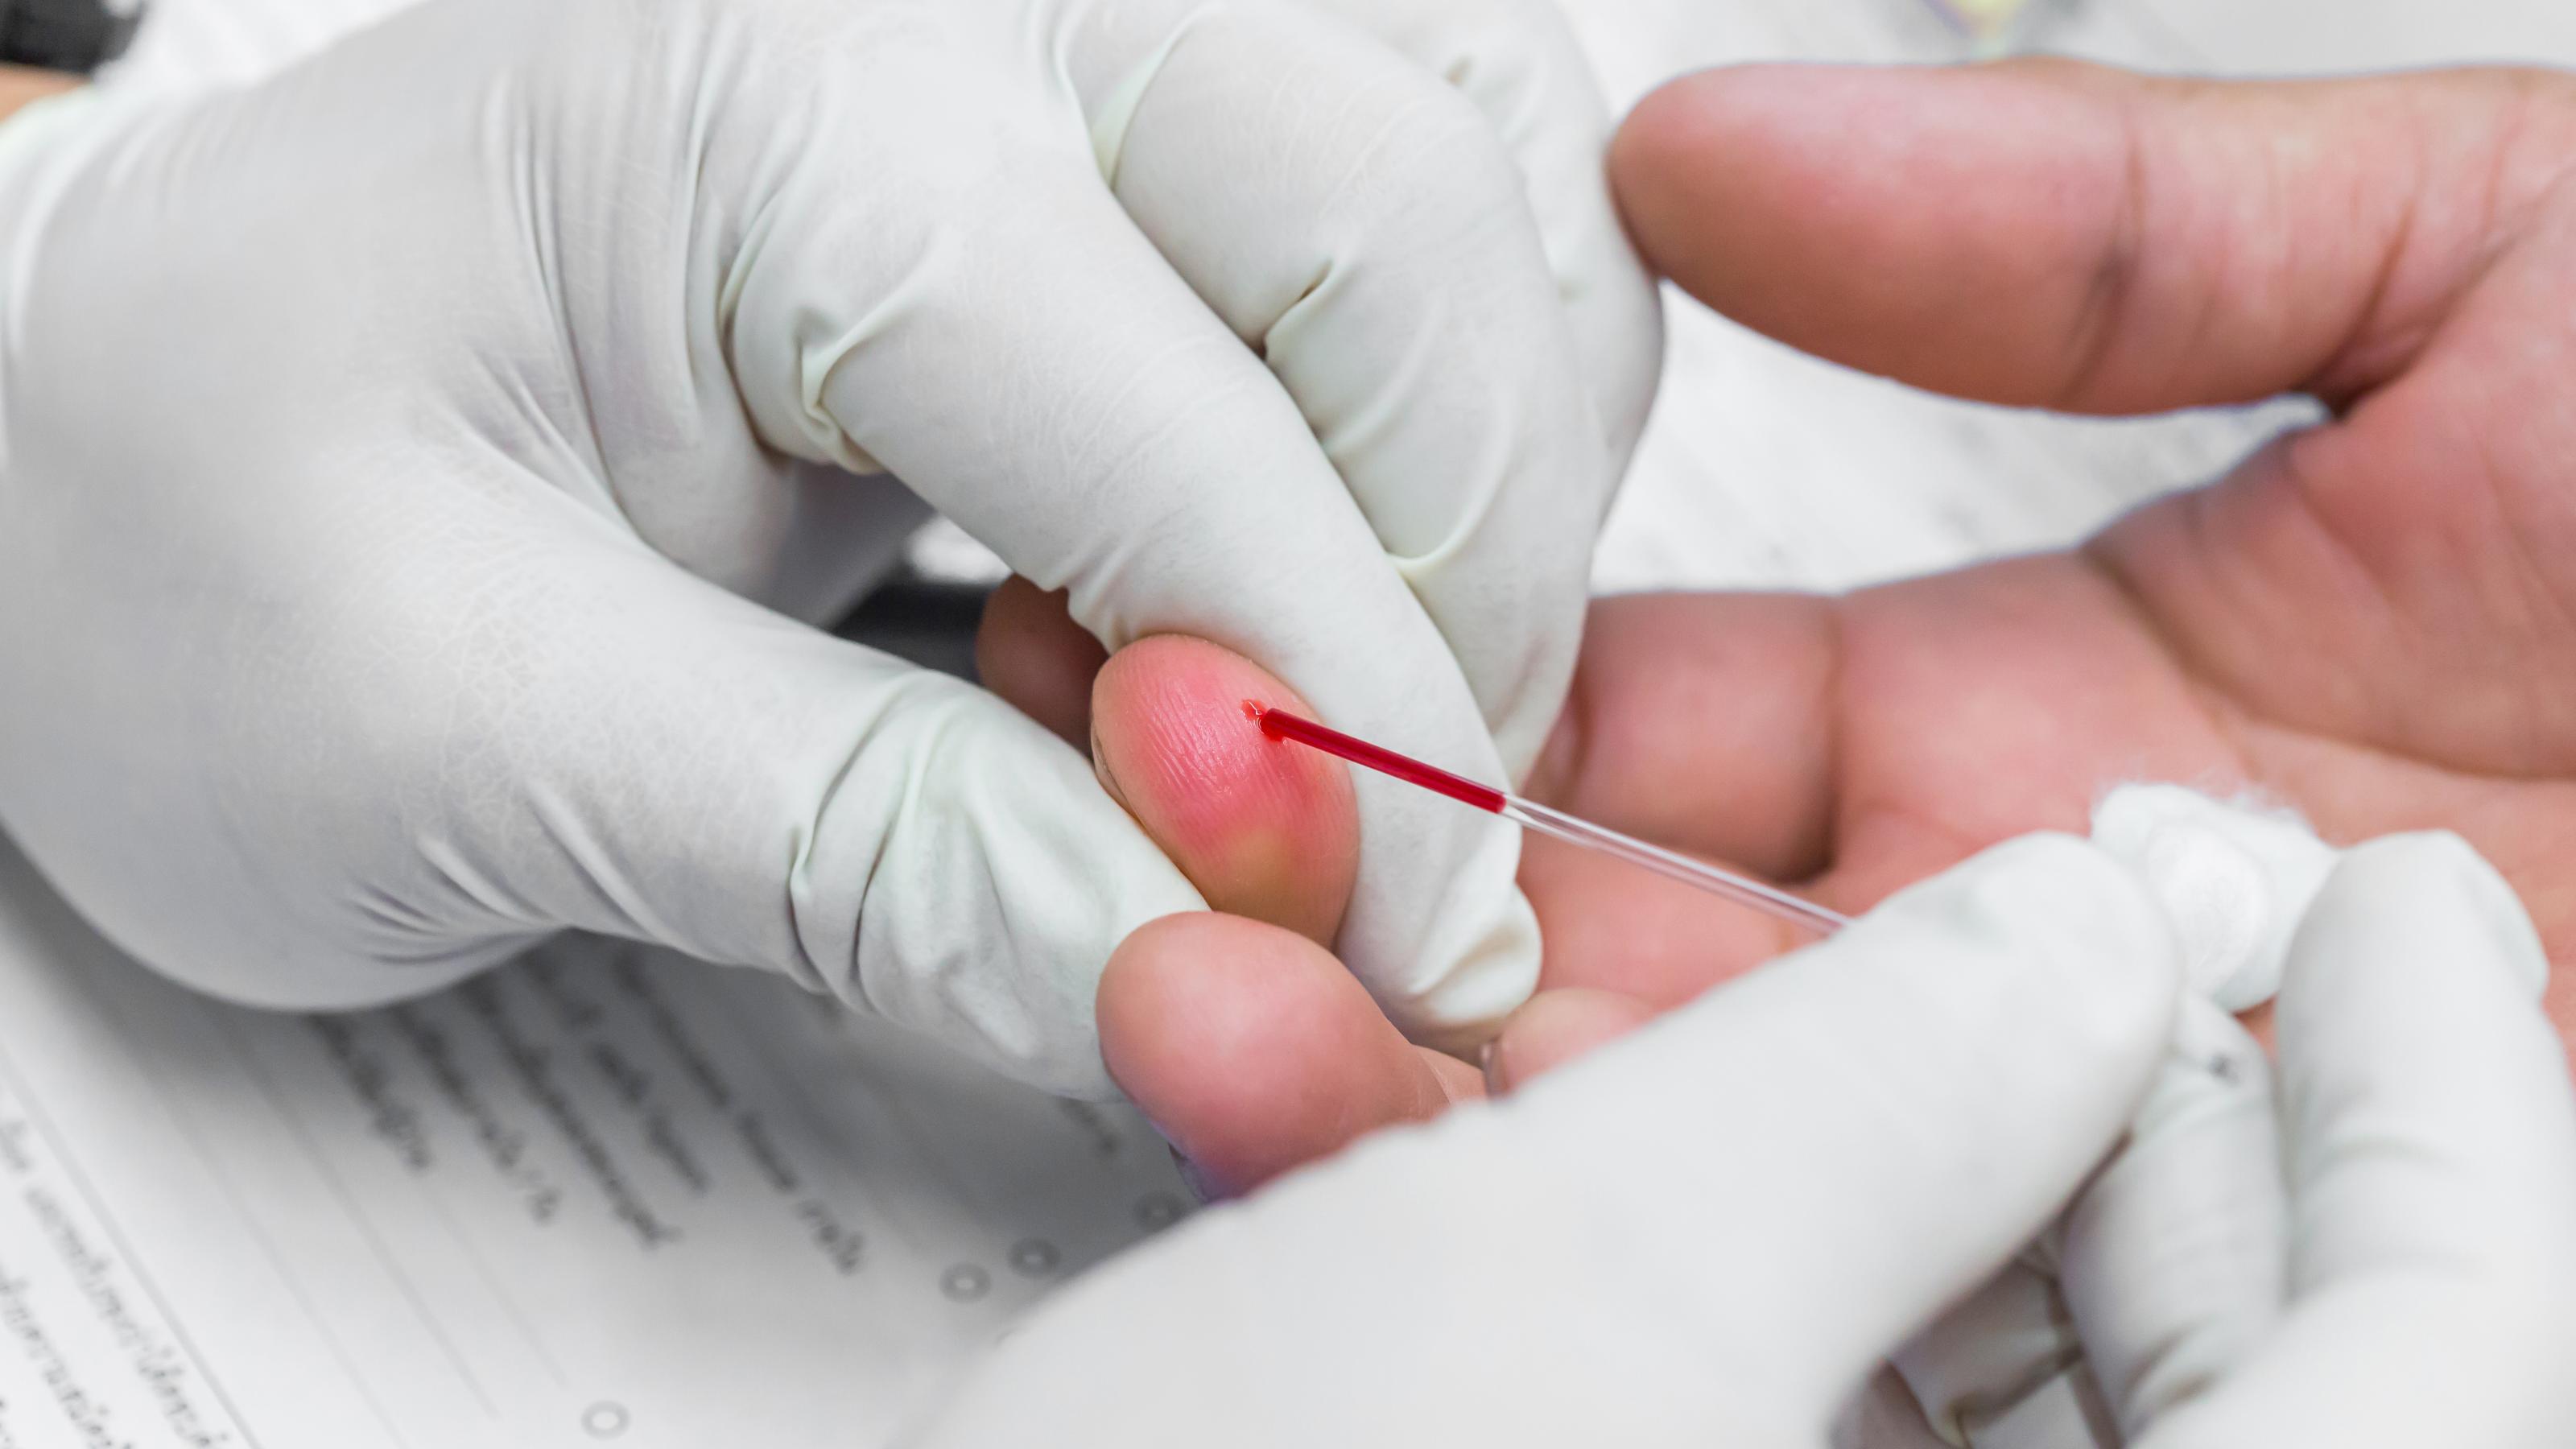 Eine medizinische Fachperson mit weißen Handschuhen entnimmt bei einer anderen Person aus dem Finger einen Bluttropfen mithilfe eines Kapillarröhrchens.